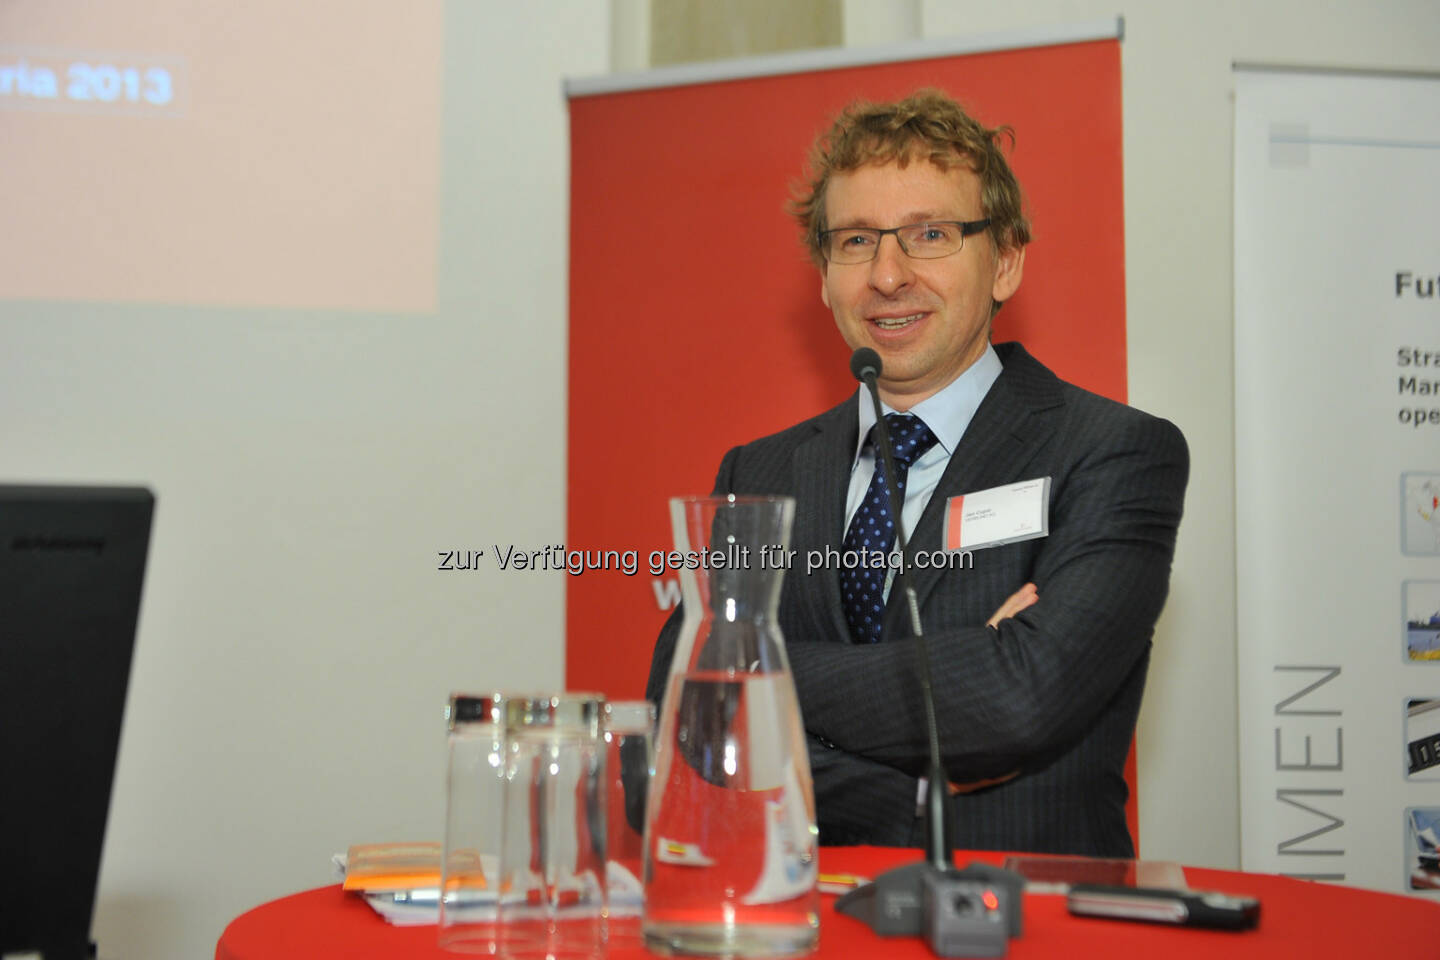 CDP Österreich Jahreskonferenz 2013